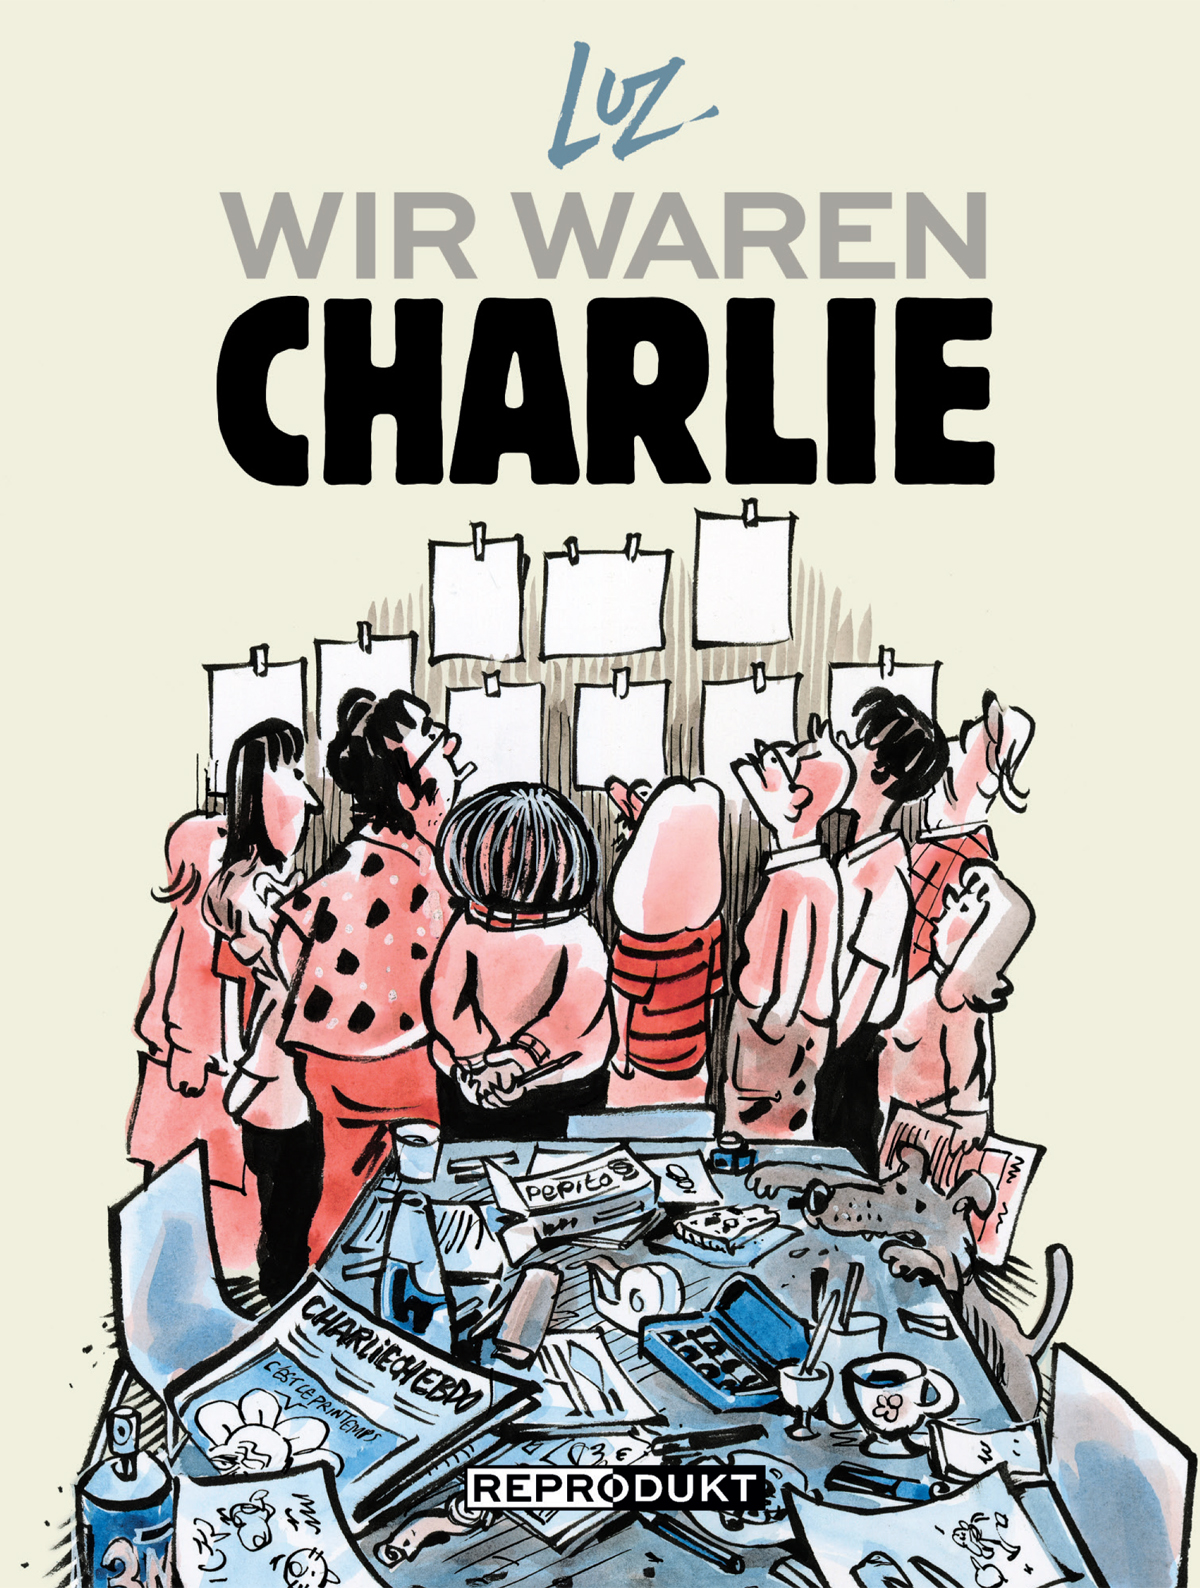 Luz; Vincent Julien Piot; Karola Bartsch; Tobias Müller / Wir waren Charlie - Bild 1 von 1